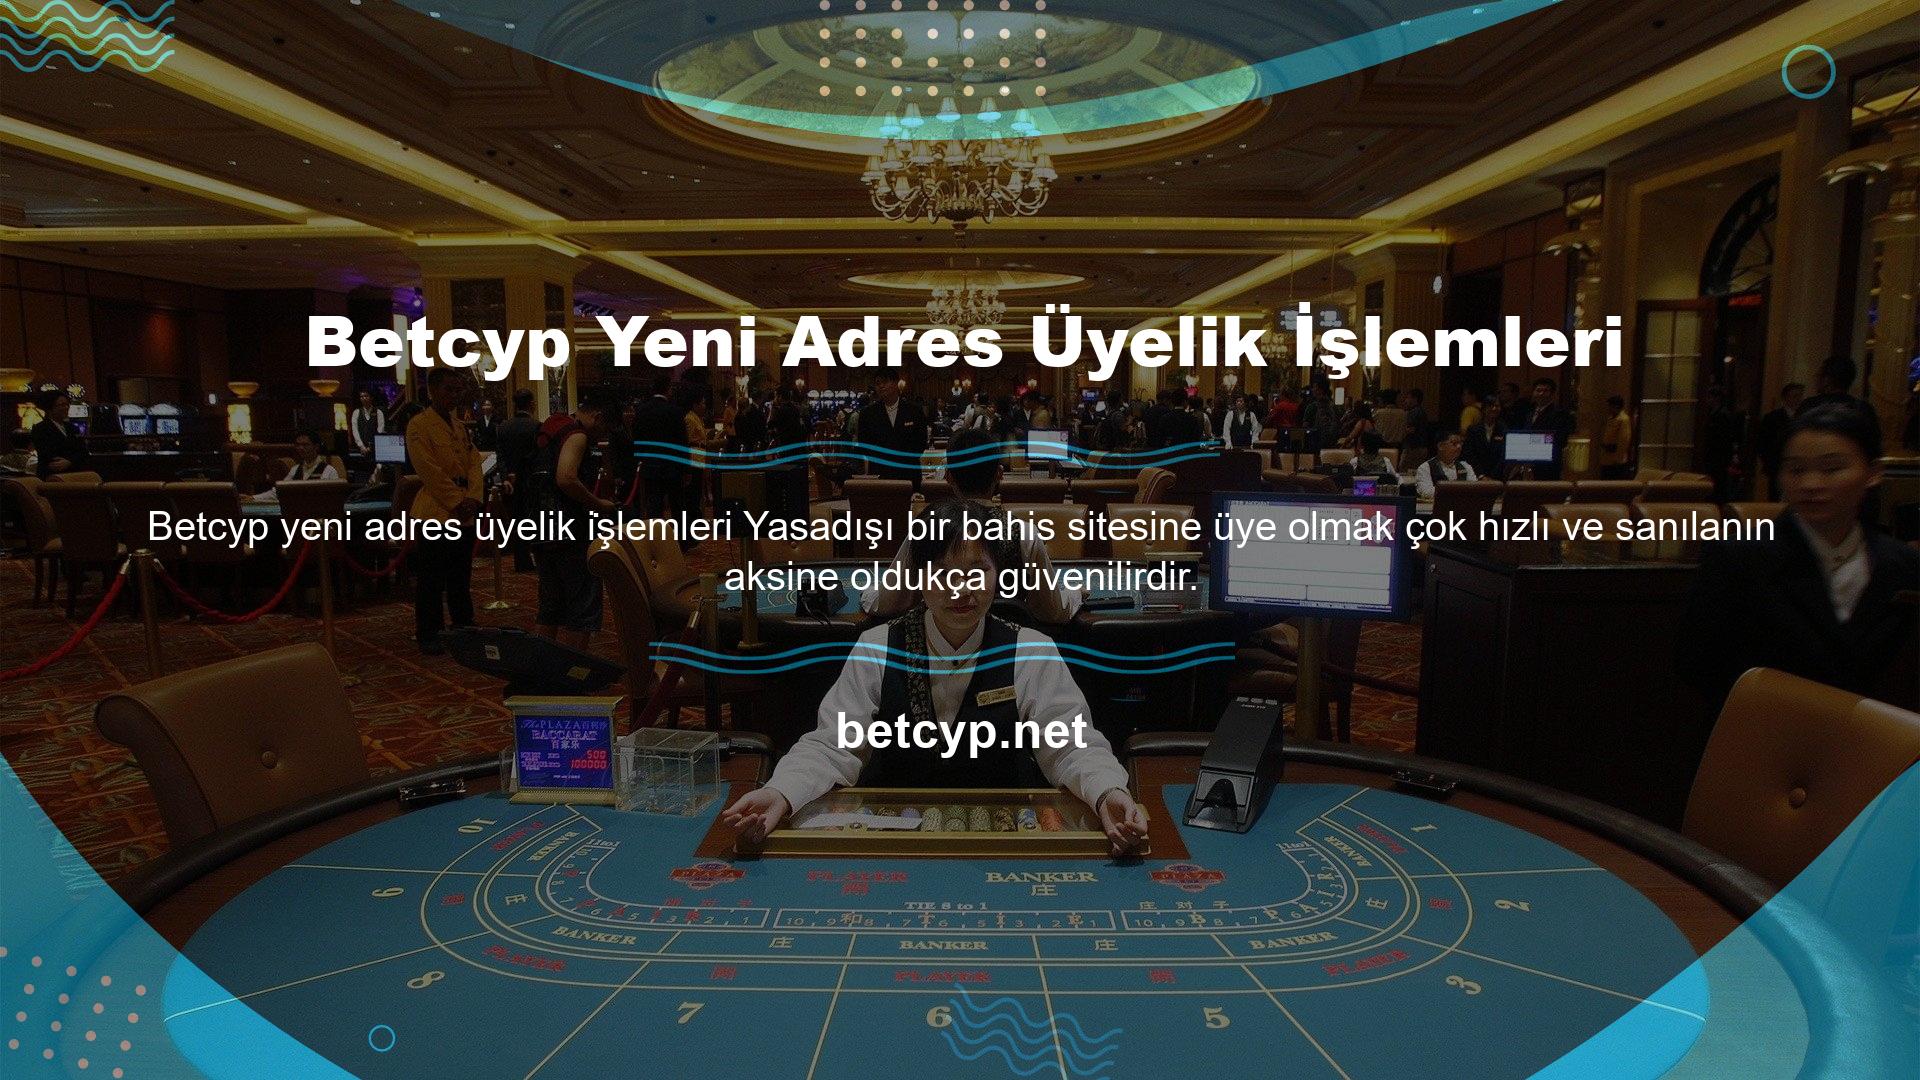 Betcyp Yeni Adresi web sitesi böyle bir yasa dışı casino sitesidir